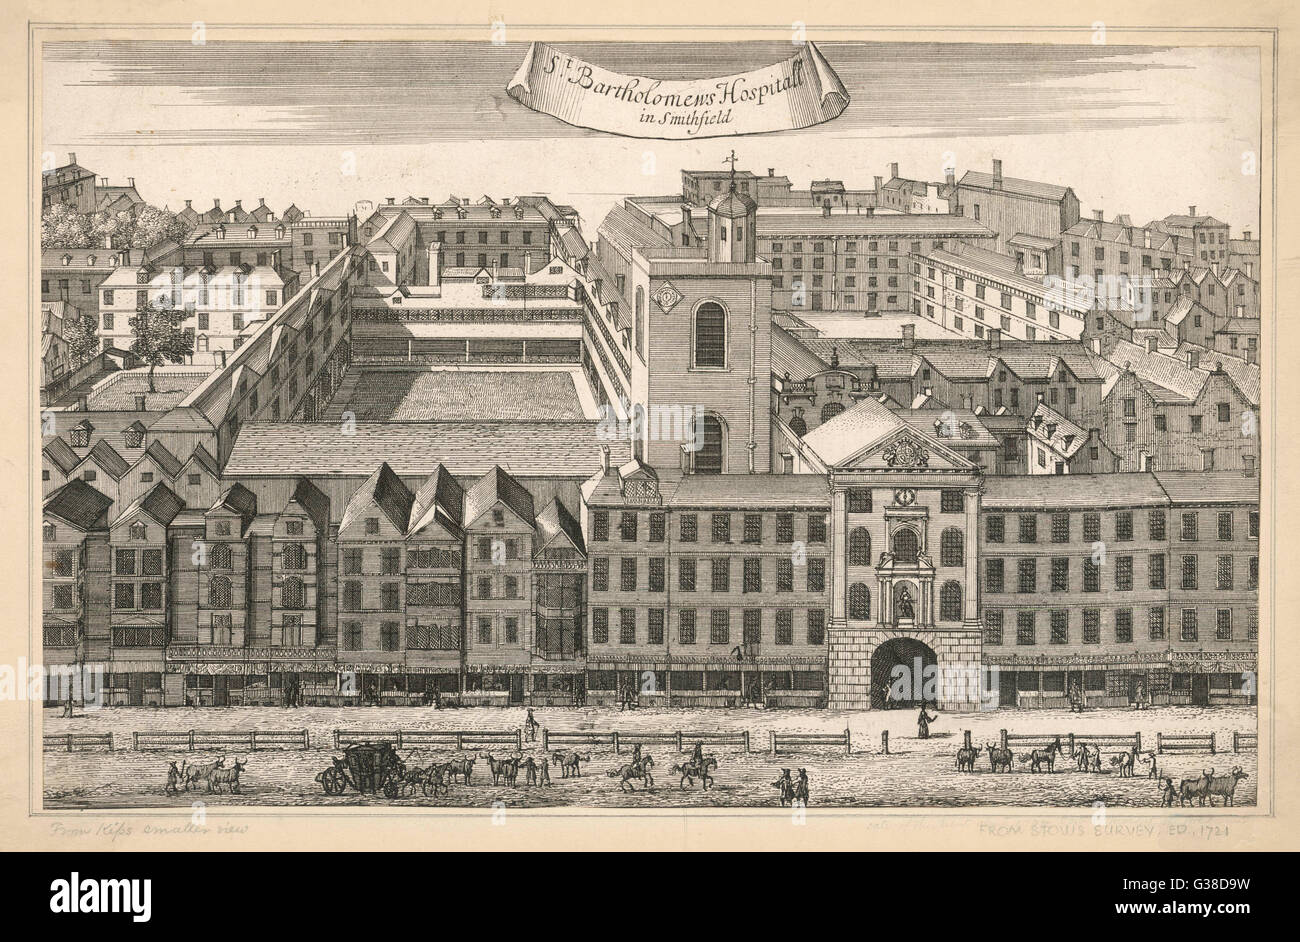 Eine allgemeine Außenansicht der Gebäude, die St.-Bartholomäus Krankenhaus in Smithfield, London ausmachen.      Datum: 1721 Stockfoto